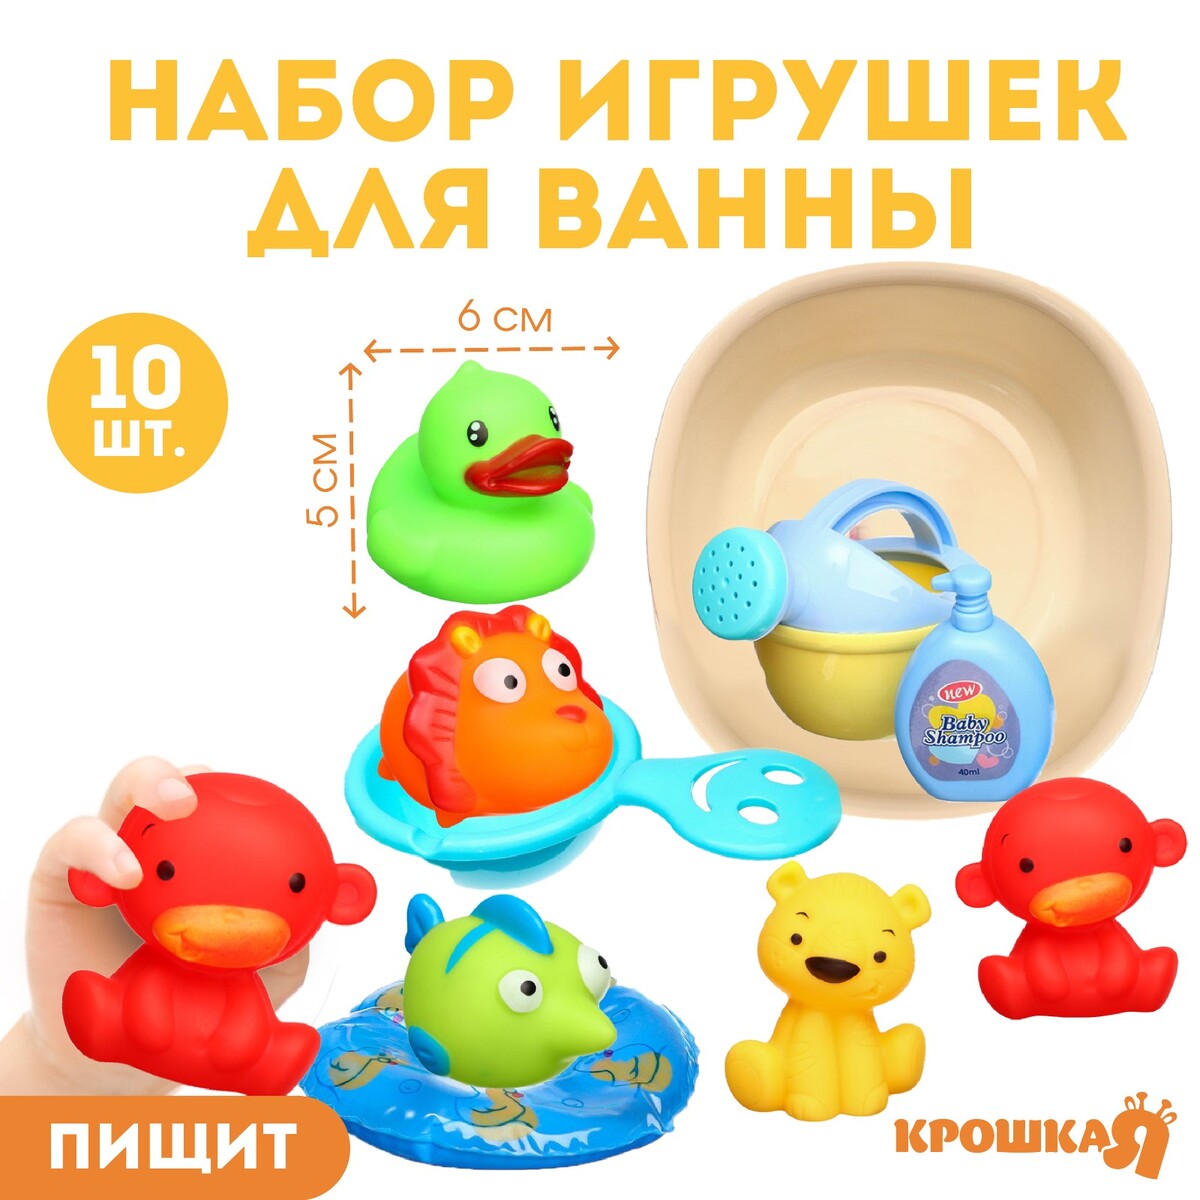 Набор резиновых игрушек для ванны набор резиновых прокладок 18 размеров 225 шт